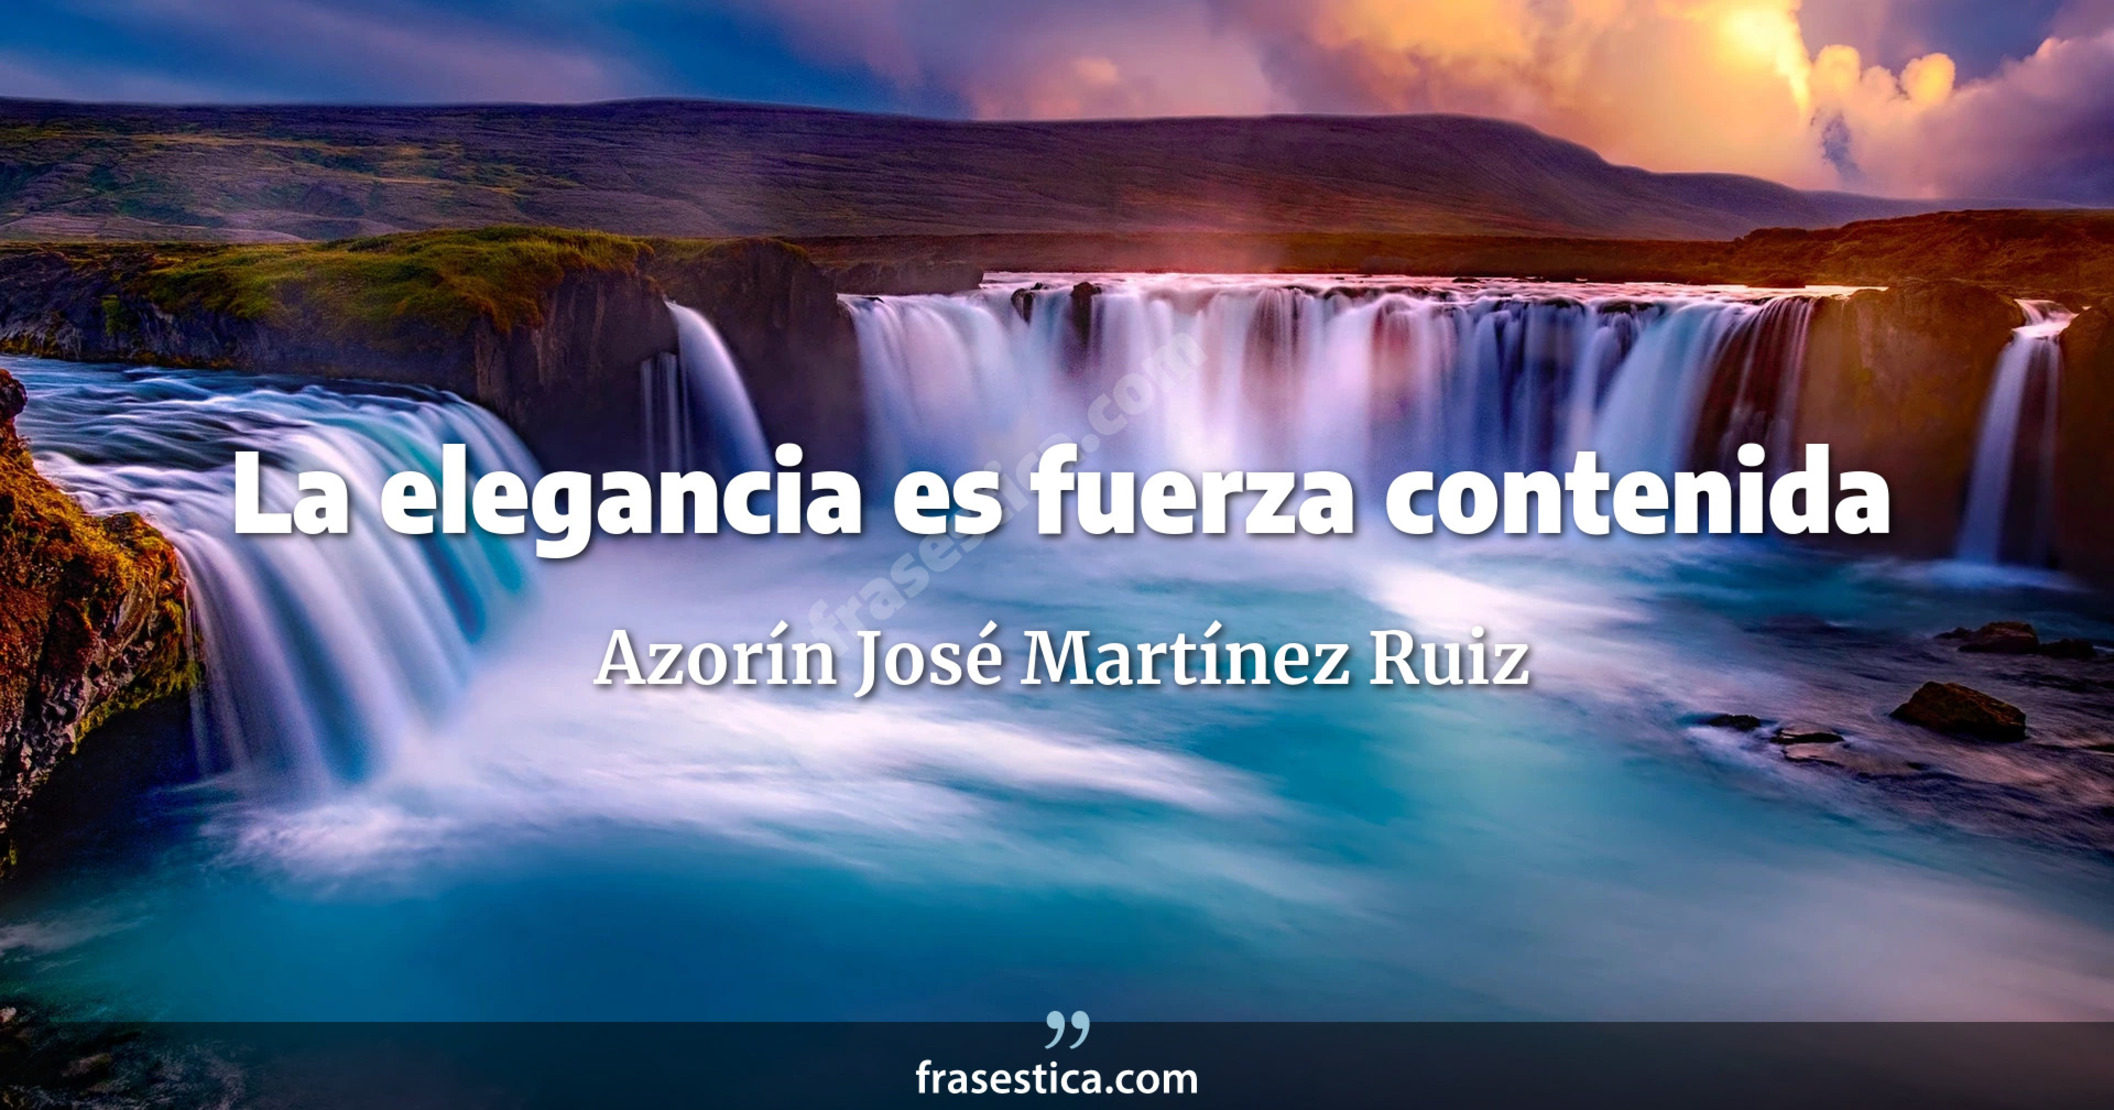 La elegancia es fuerza contenida - Azorín José Martínez Ruiz